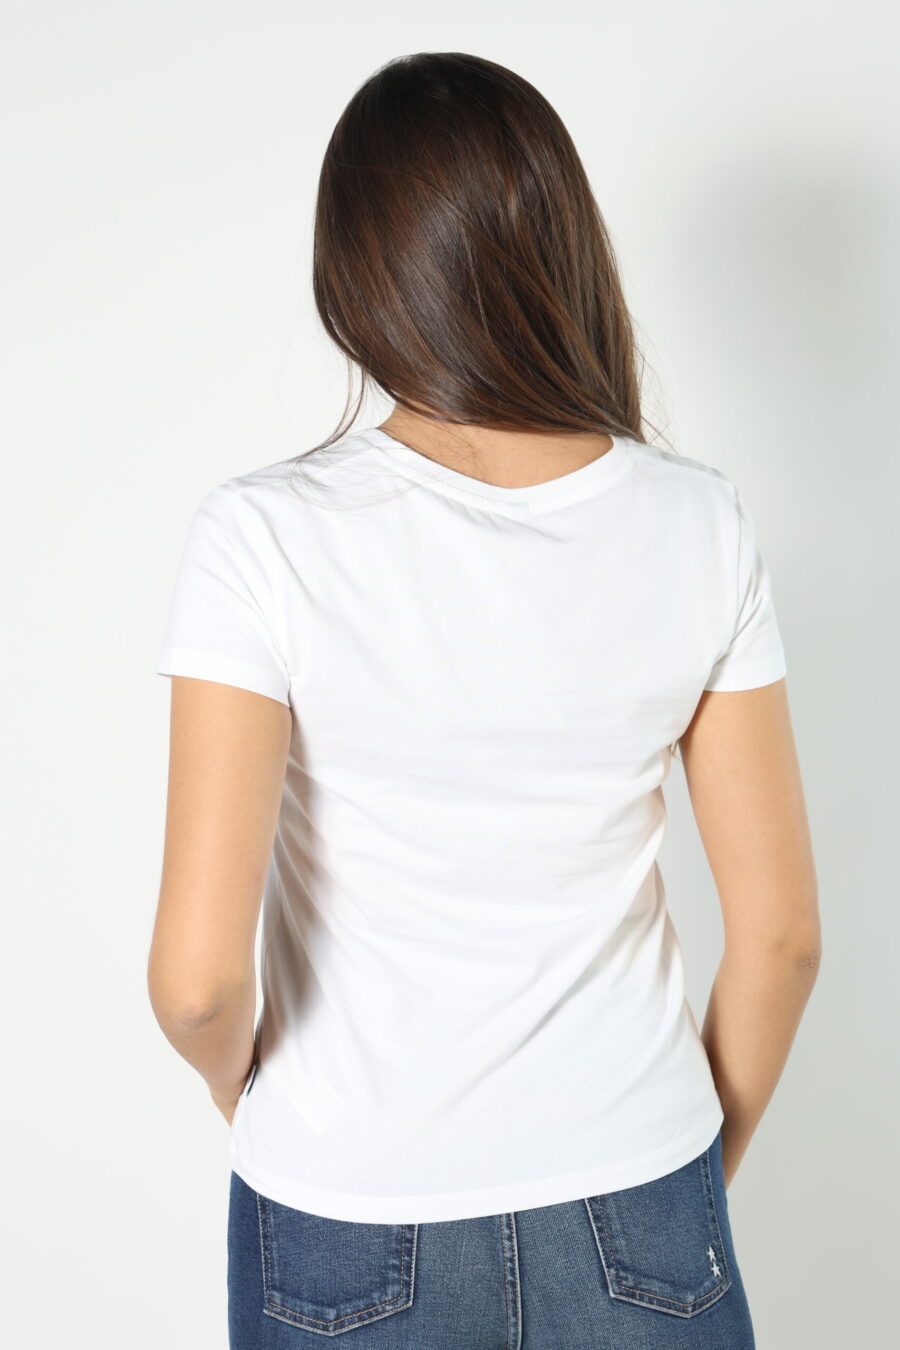 Weißes T-Shirt mit Bärenlogo-Aufnäher "underbear" - 8052865435499 319 skaliert